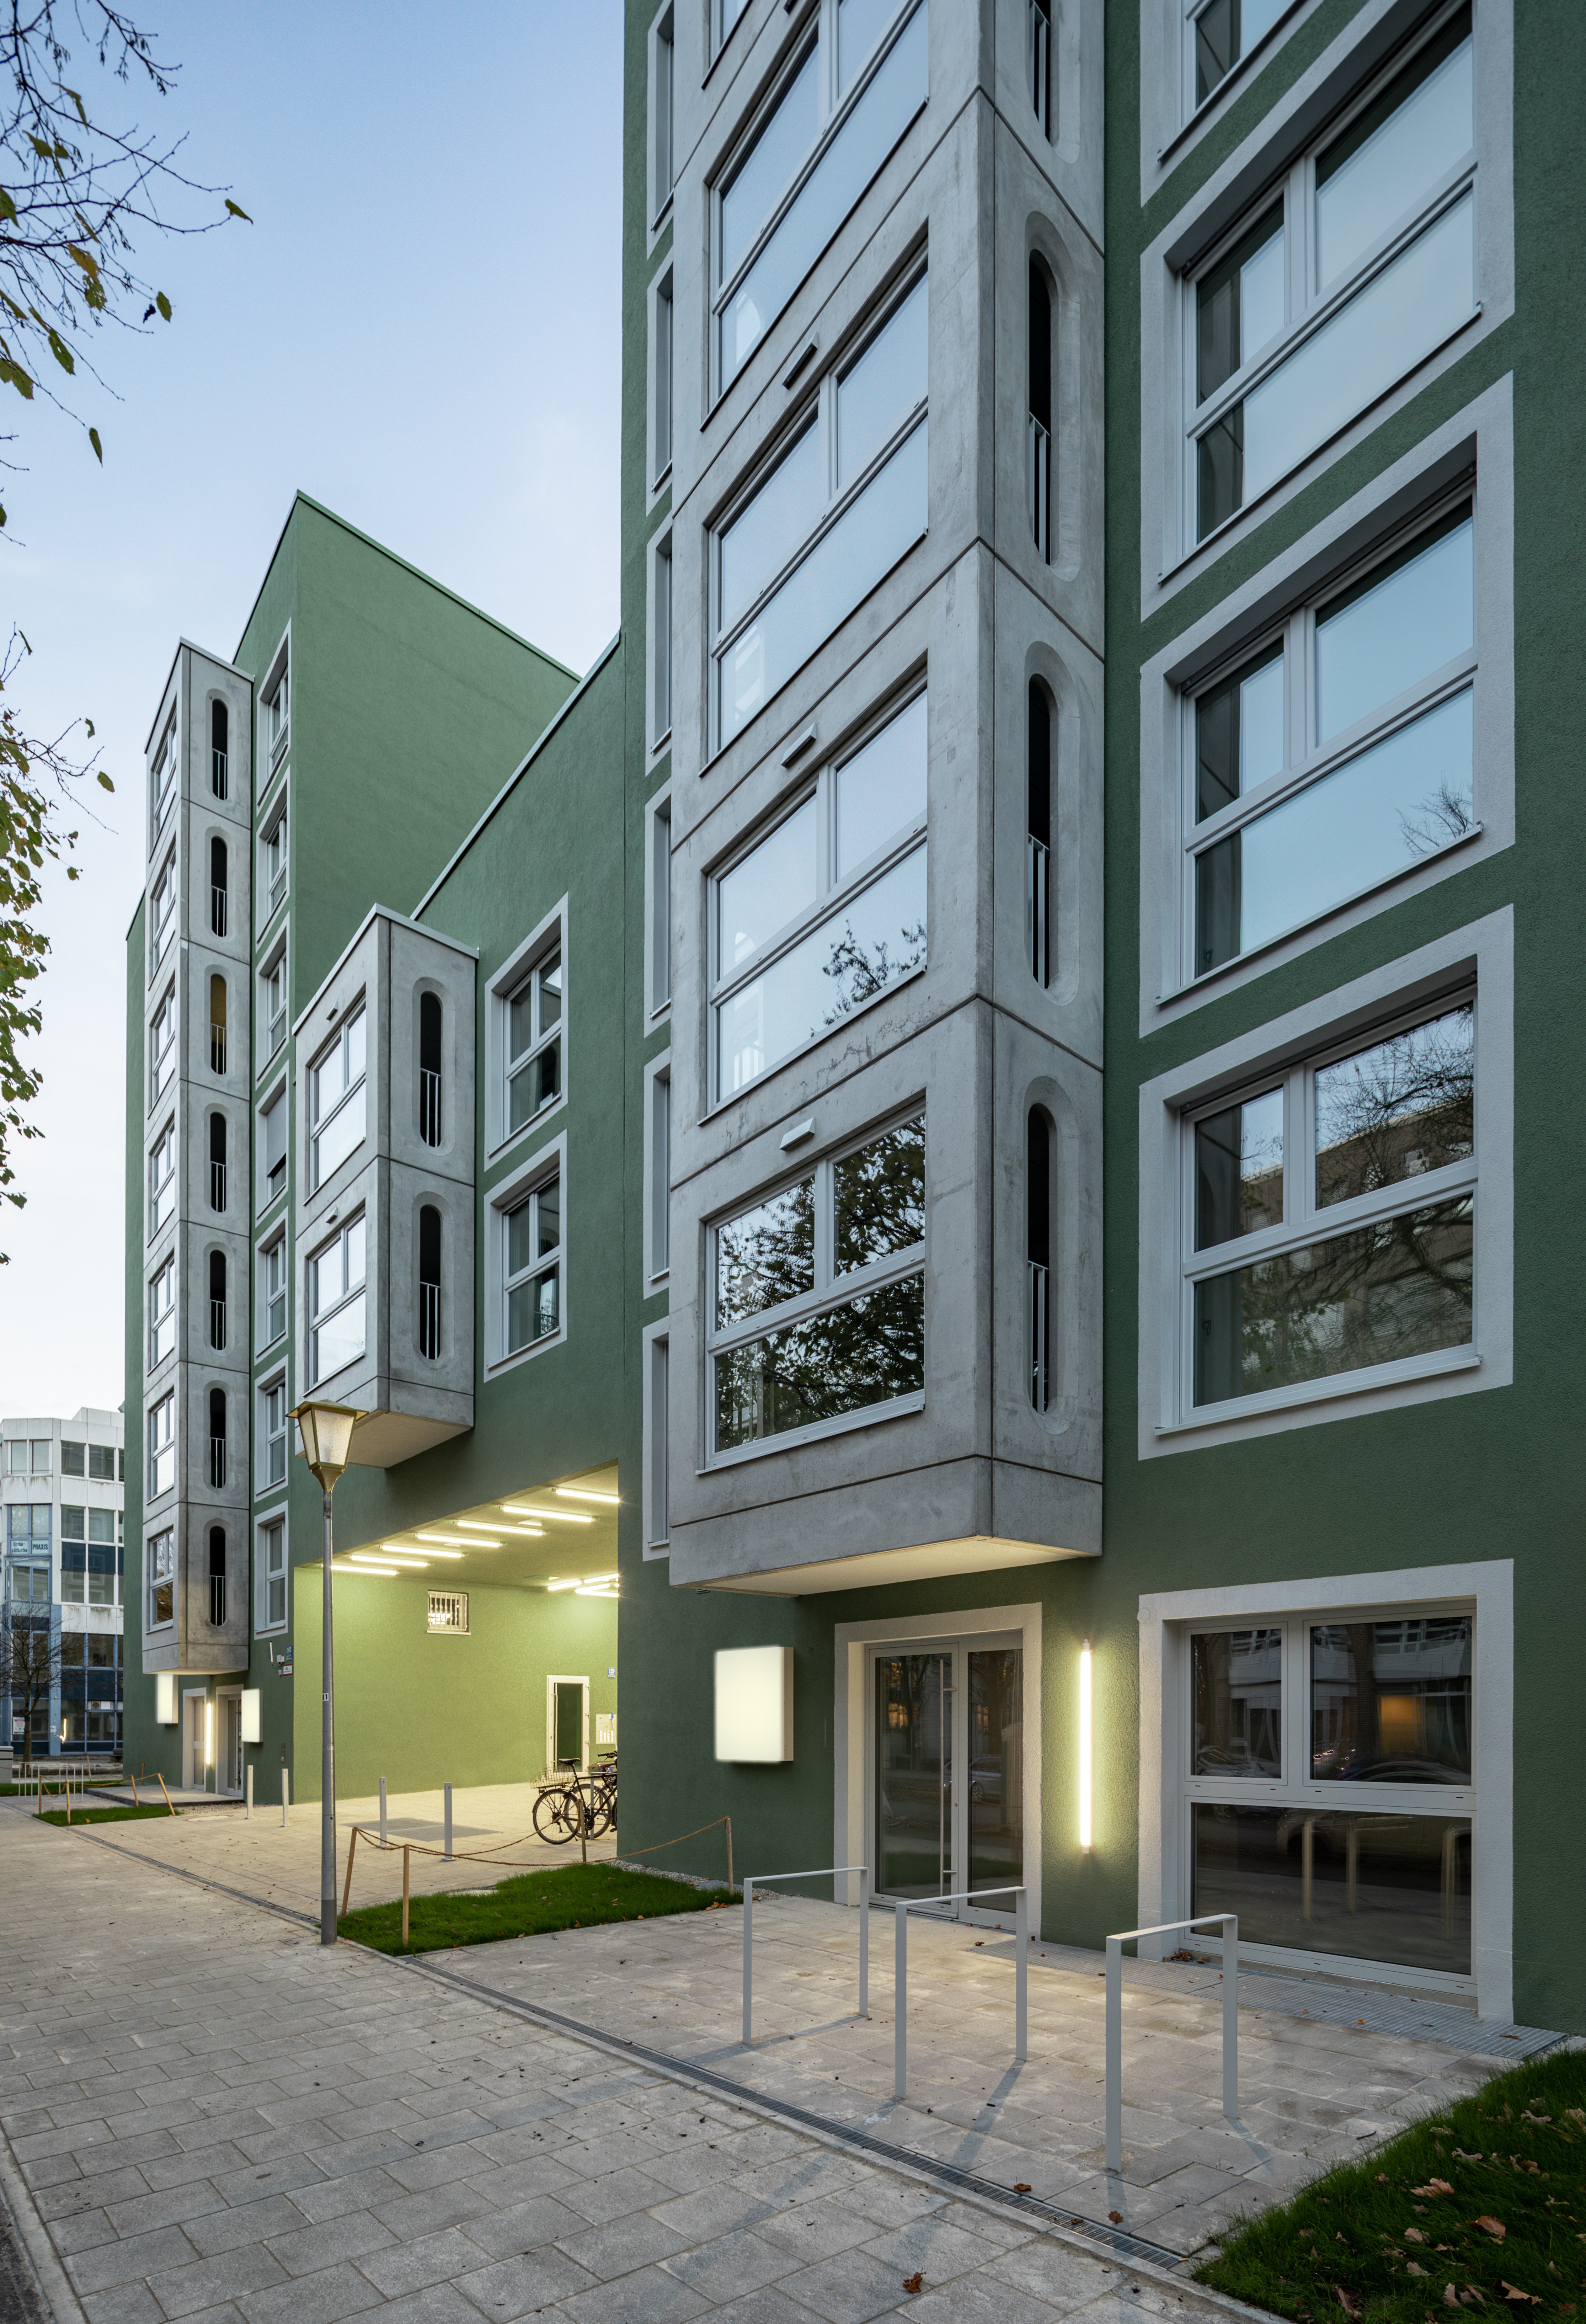 Goetz Castorph Lehmann Tabillion Architektur Städtebau München grün Balkone Raute Karo auskragend Dachterrase Mehrfamilienhaus Neubau Wohnen Nacht 